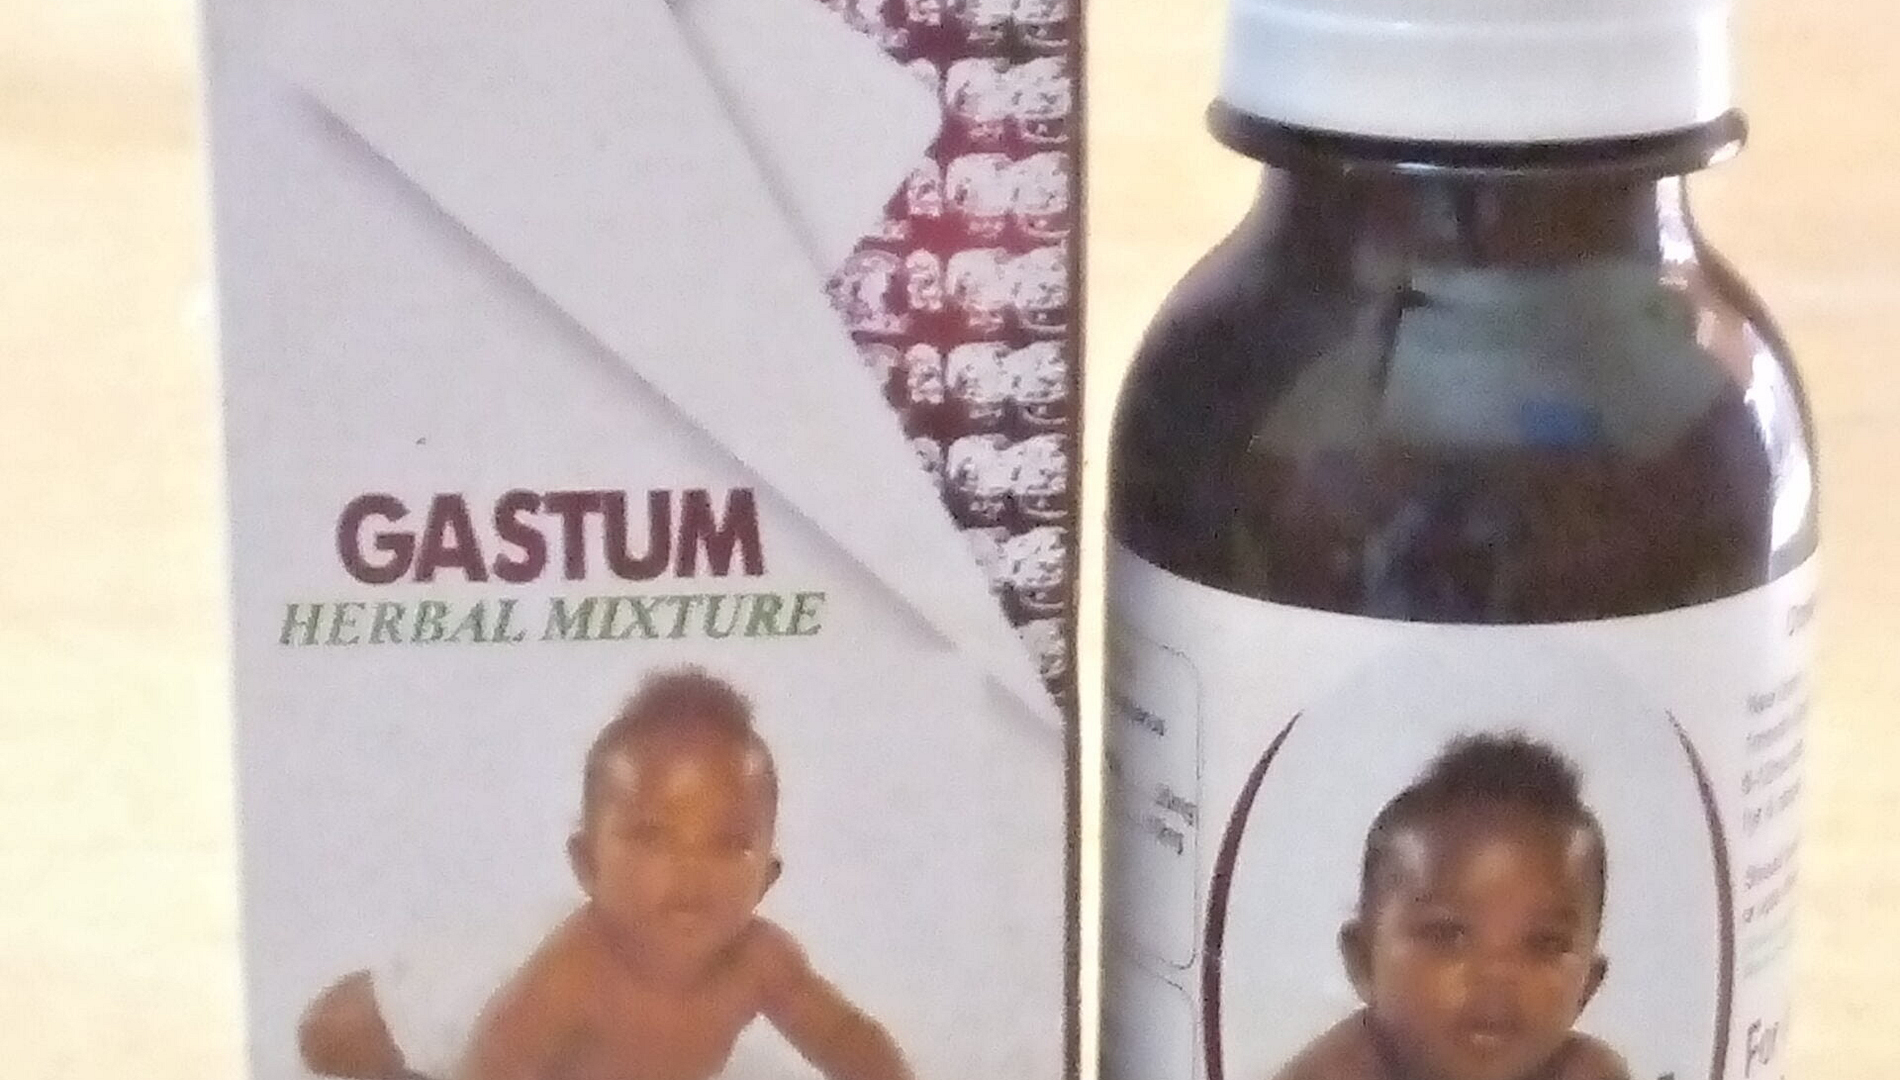 Gastum herbal mixture